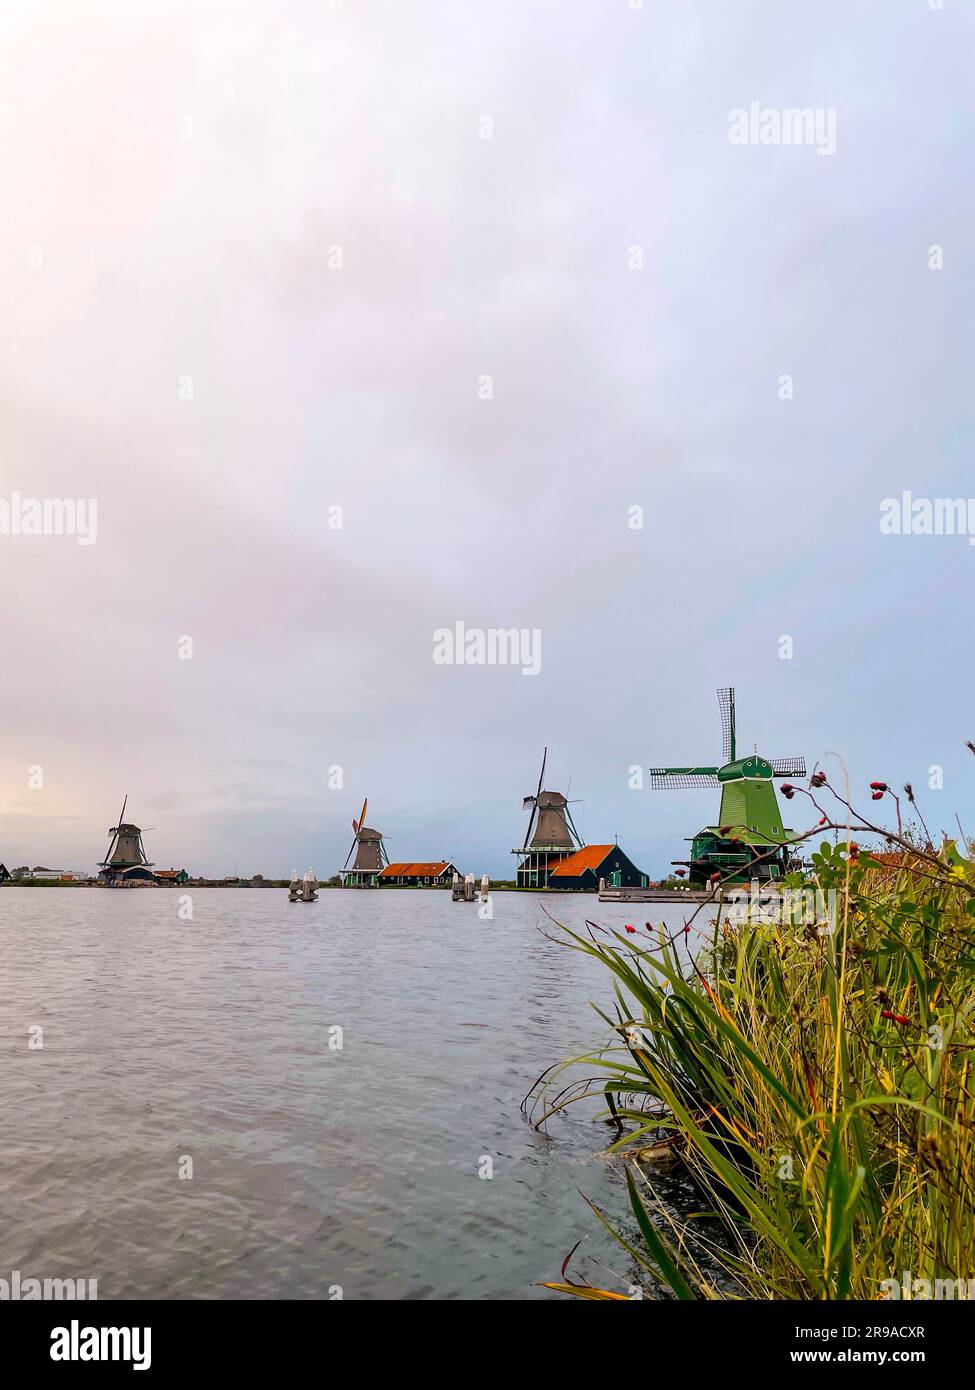 Zaanse Schans is a neighbourhood of Zaandam, near Zaandijk, Netherlands, famous for its collection of well-preserved historic windmills and houses. Stock Photo